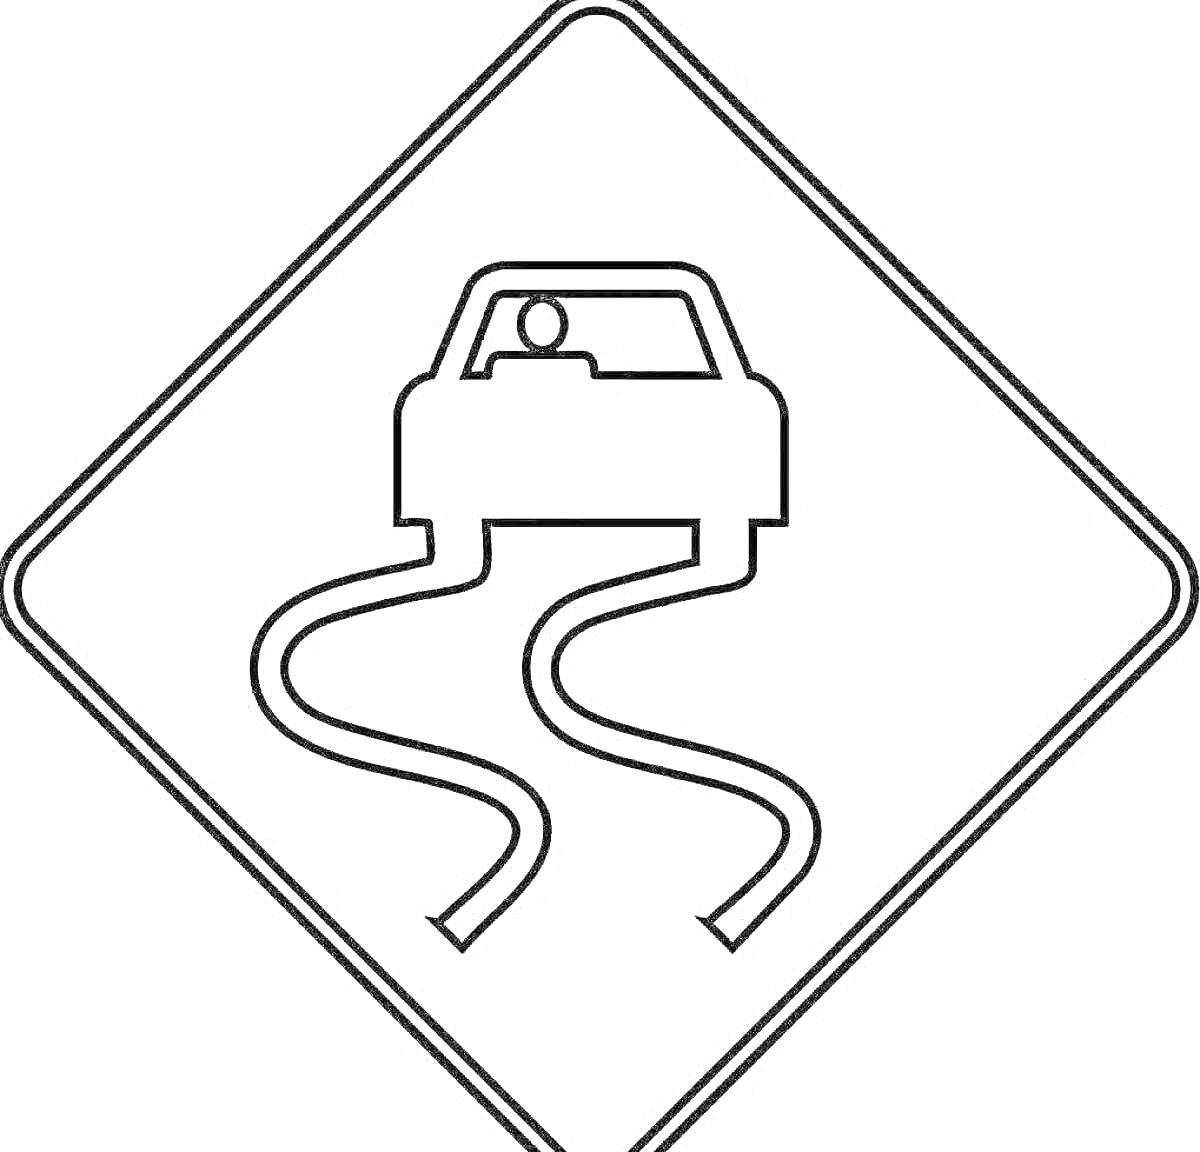 Раскраска Знак предупреждения о скользкой дороге: автомобиль с следами заноса на дорожном покрытии, внутри ромбовидного знака.